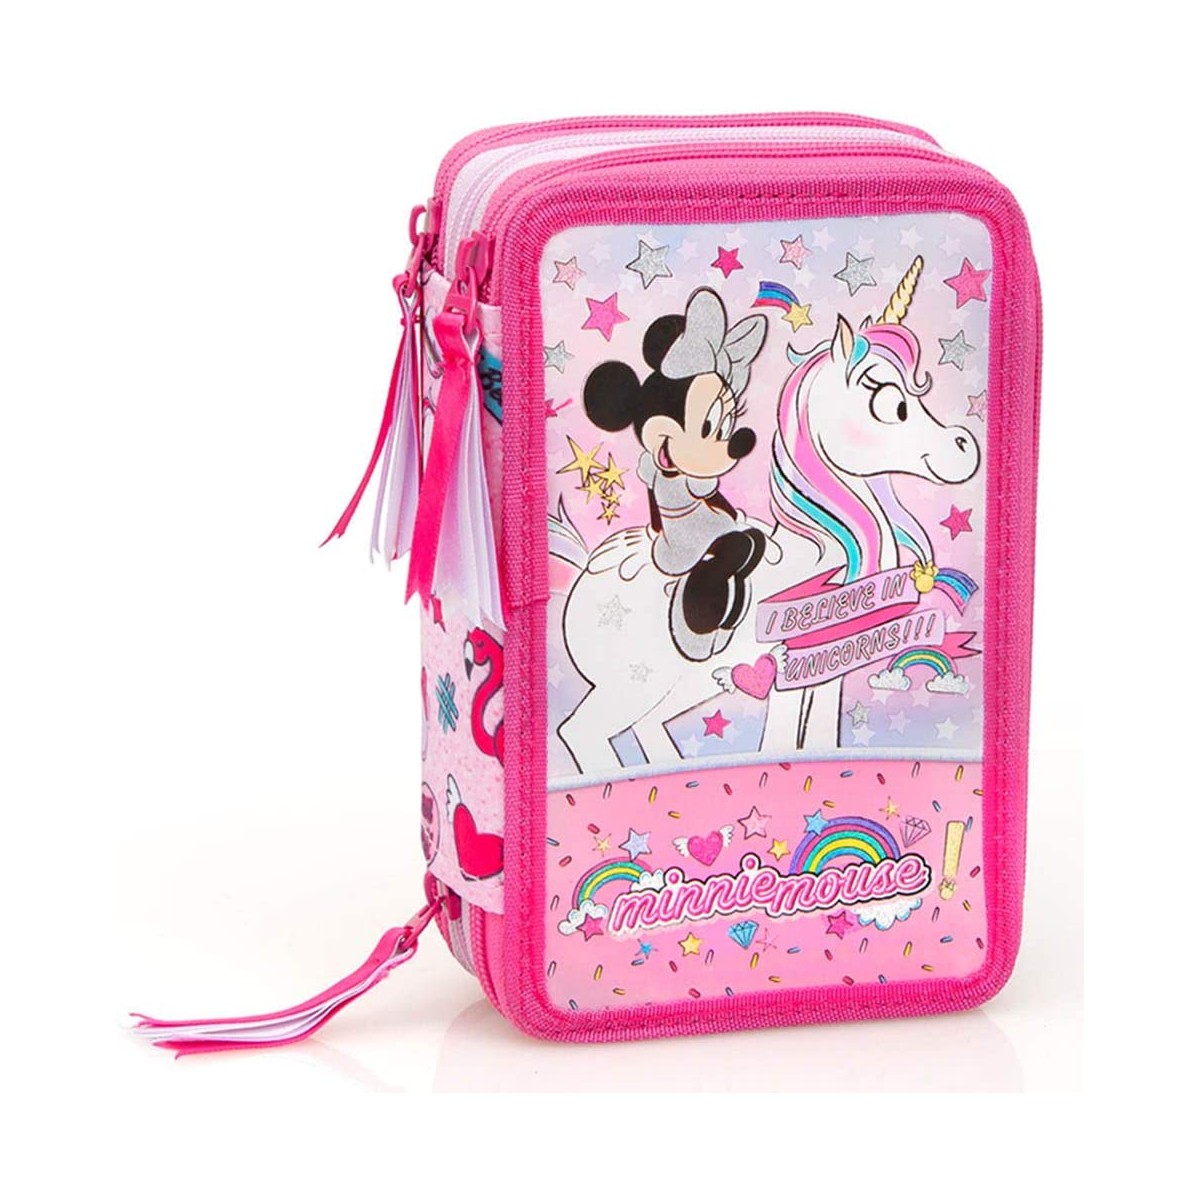 Astuccio scuola Minnie Mouse Unicorno rosa, ufficiale Disney